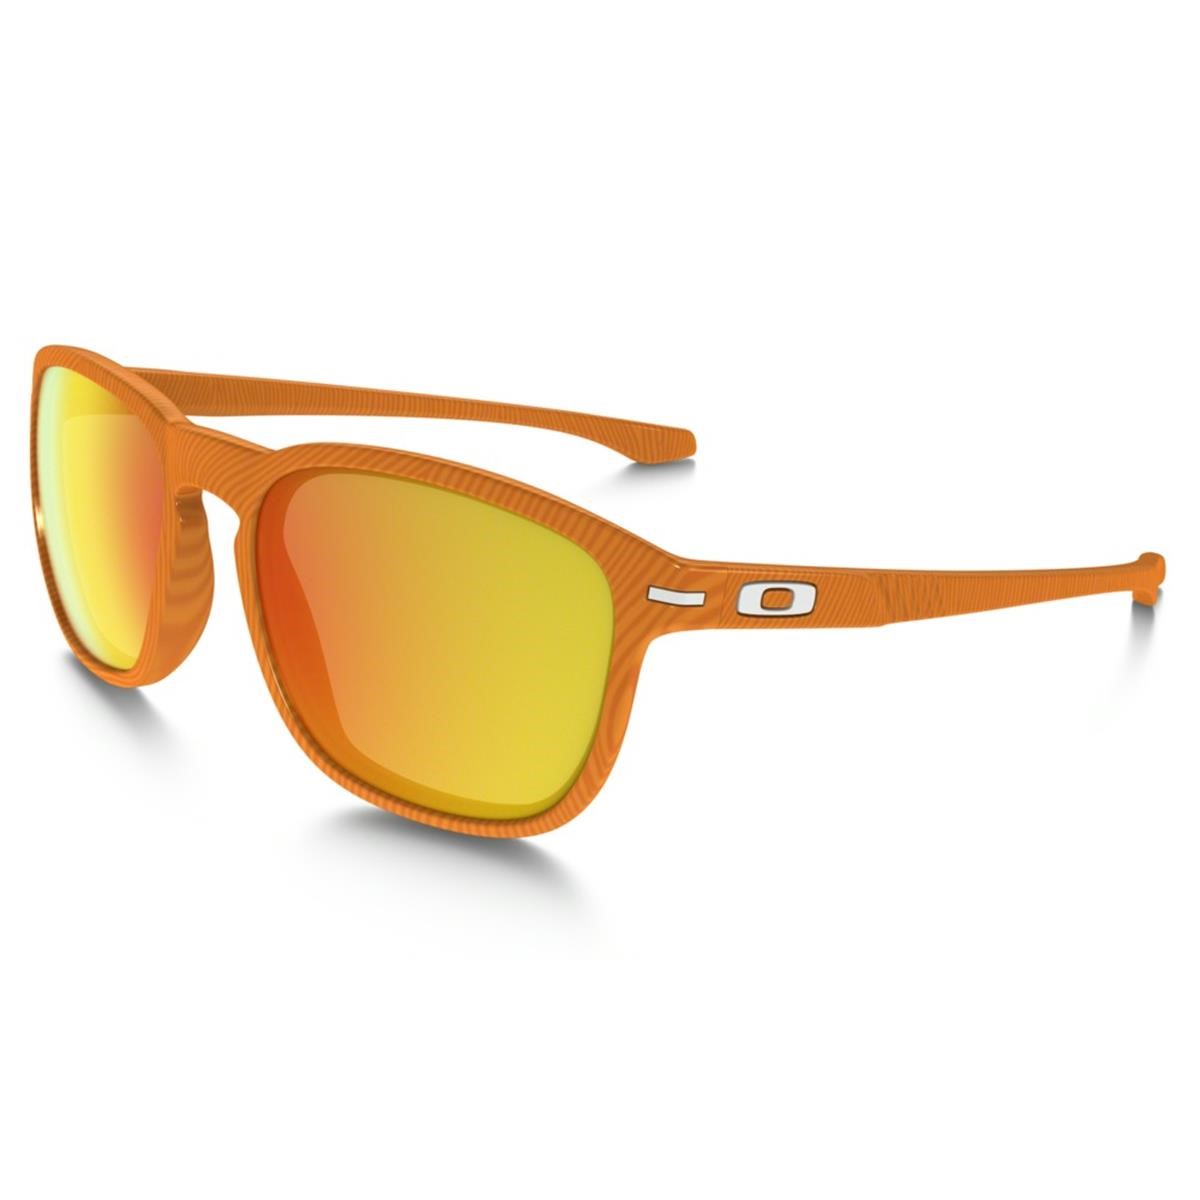 Oakley Sunglasses Enduro Fingerprint - Atomic Orange/Fire Iridium